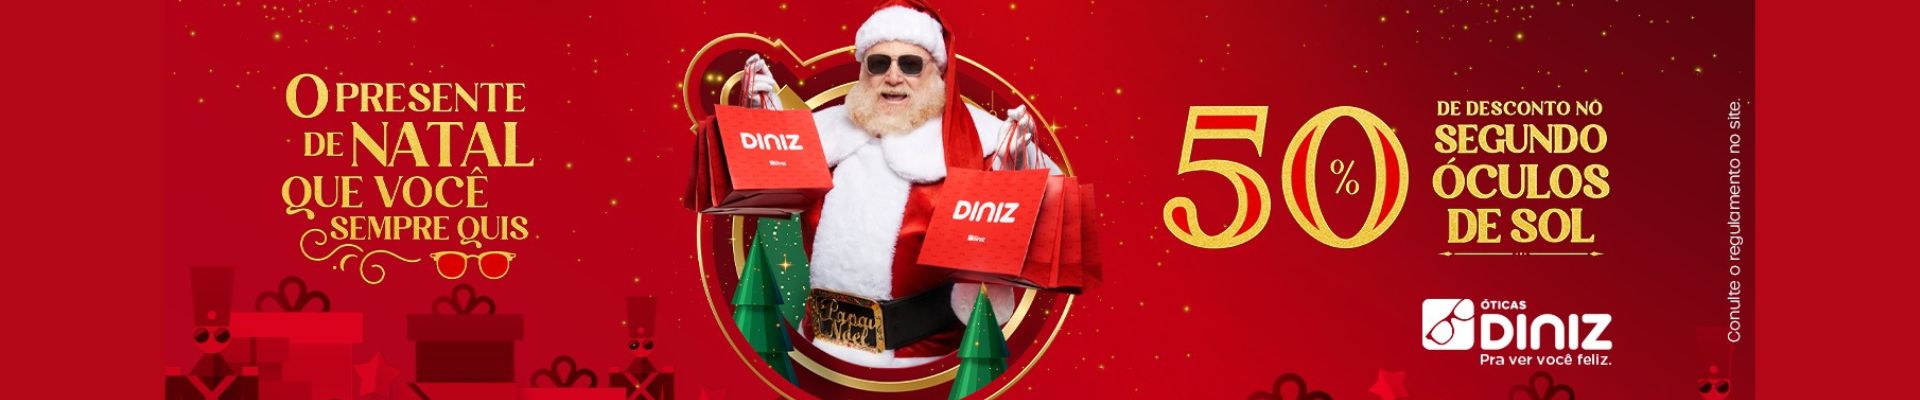 Óticas Diniz apresenta campanha de fim de ano